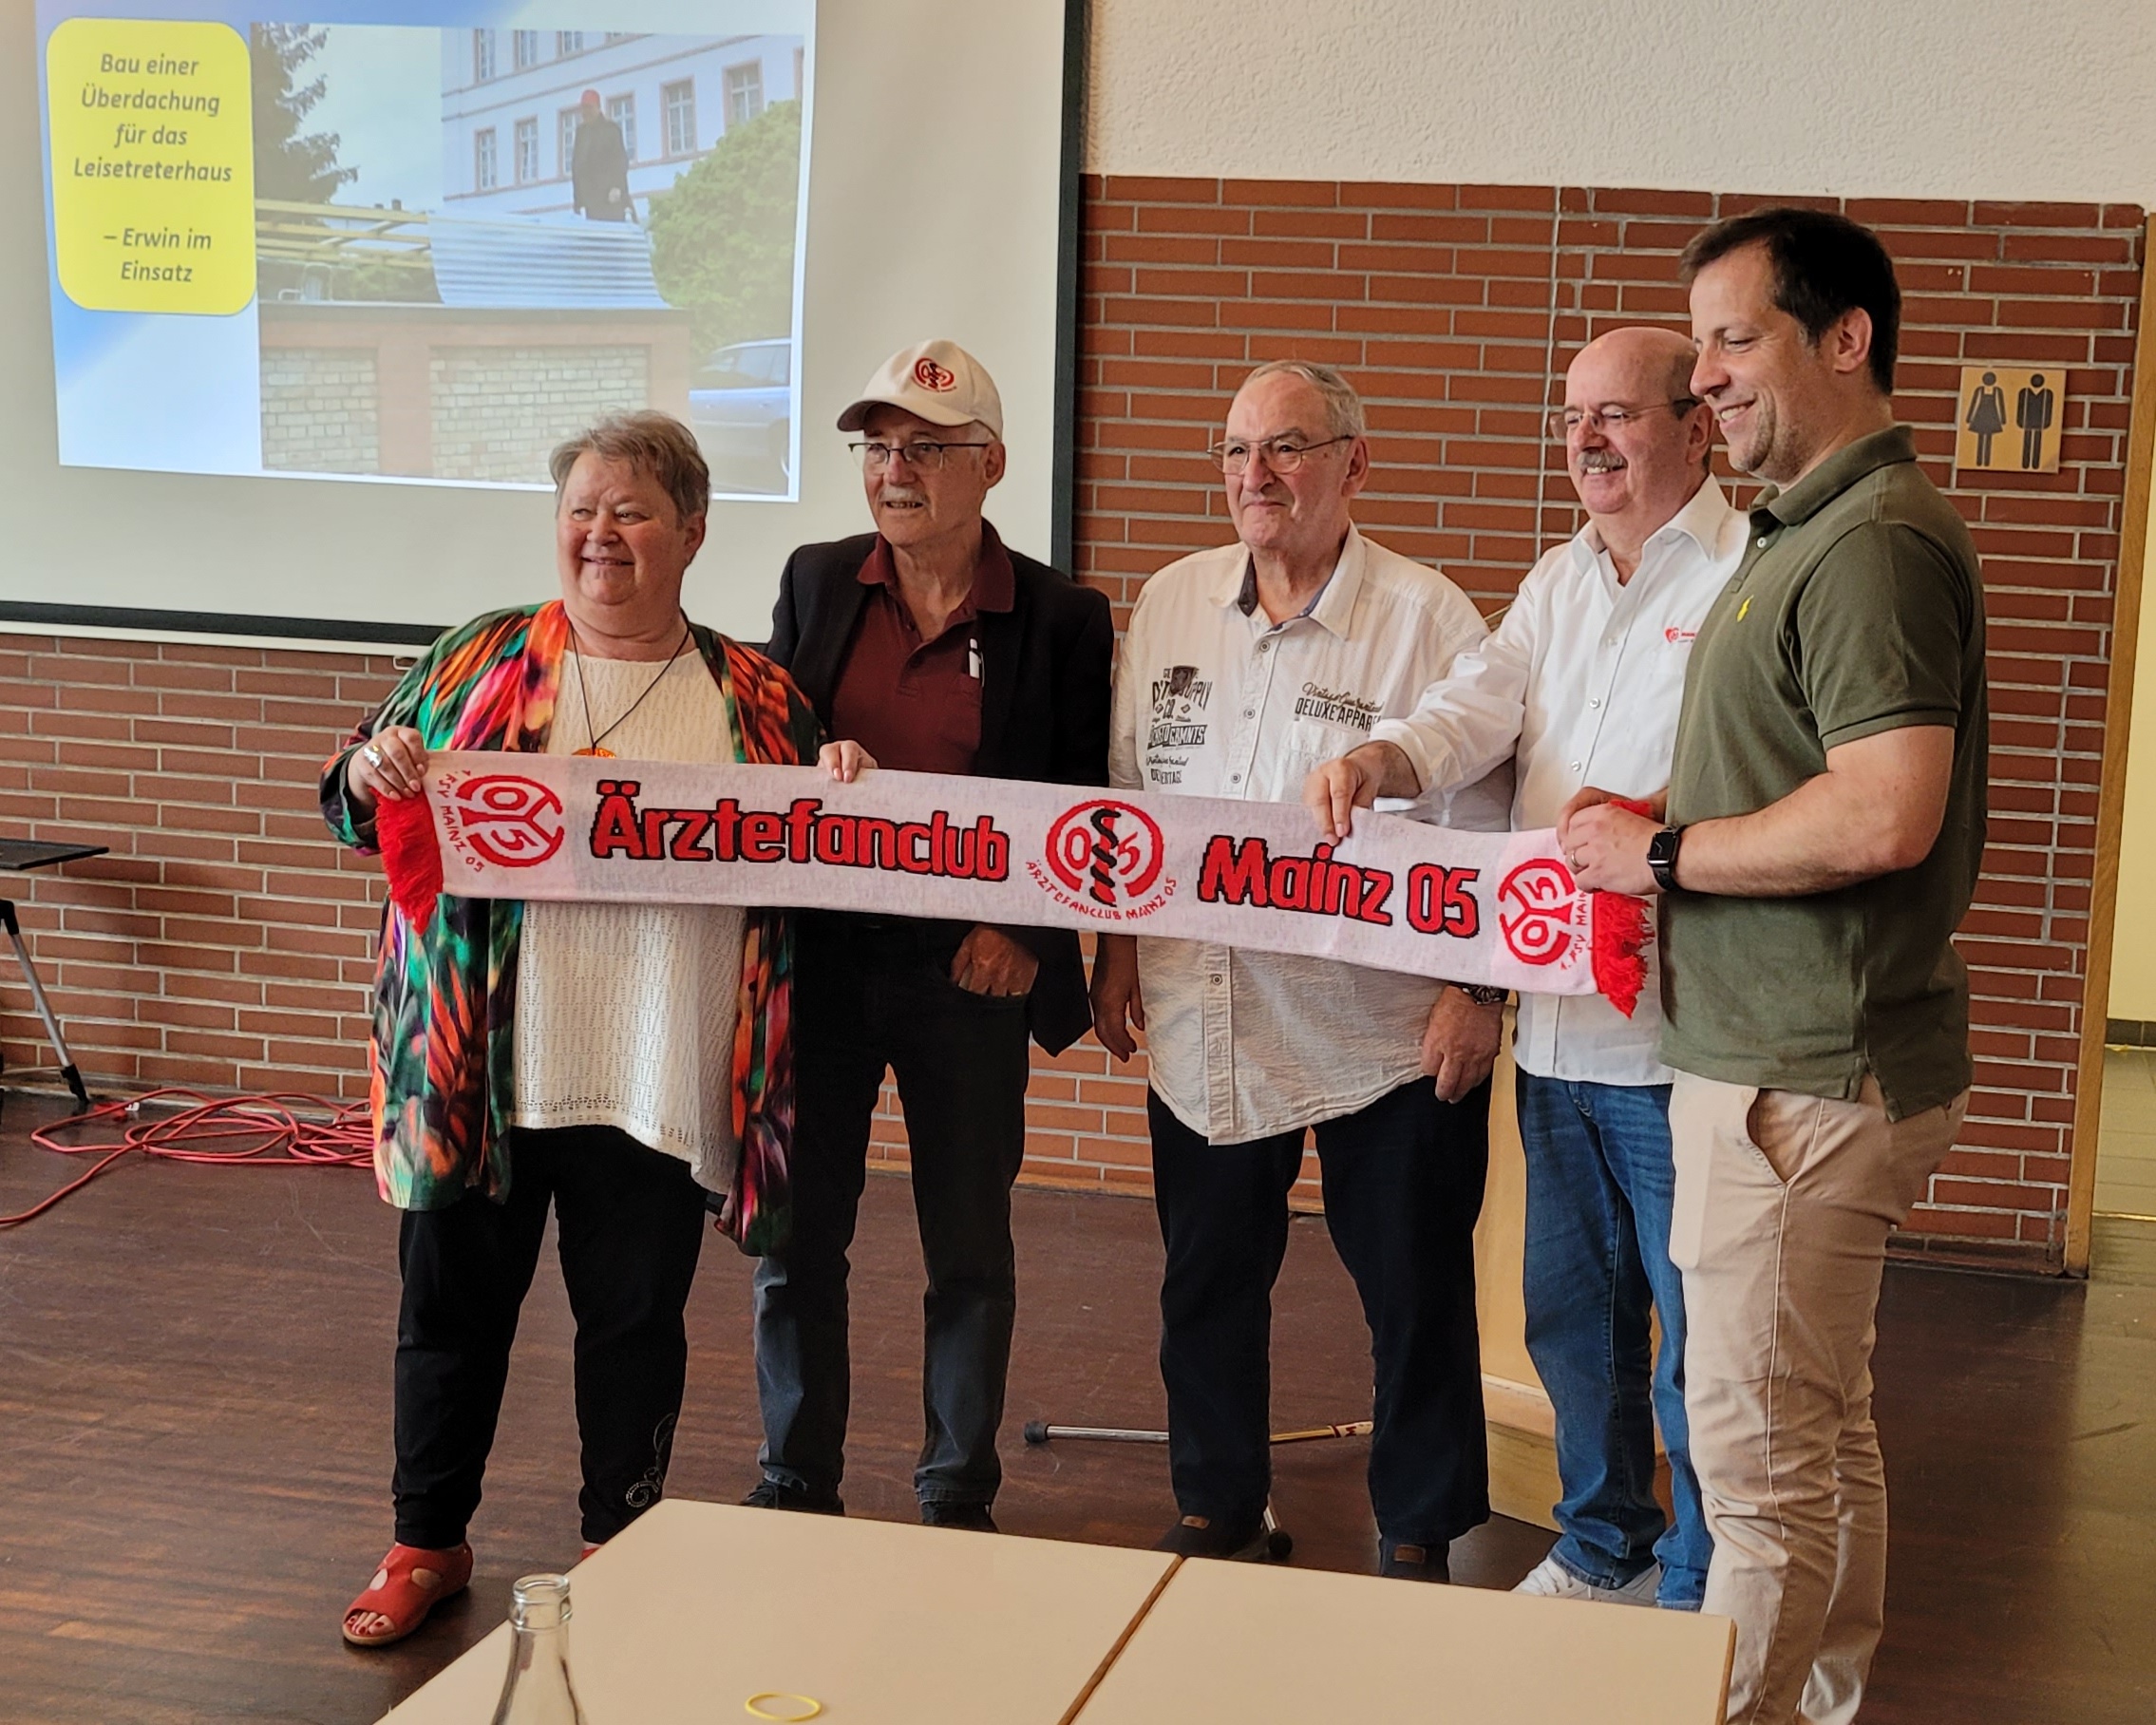 40-Jahre Meenzer Leisetreter Ärztefanclub Mainz 05